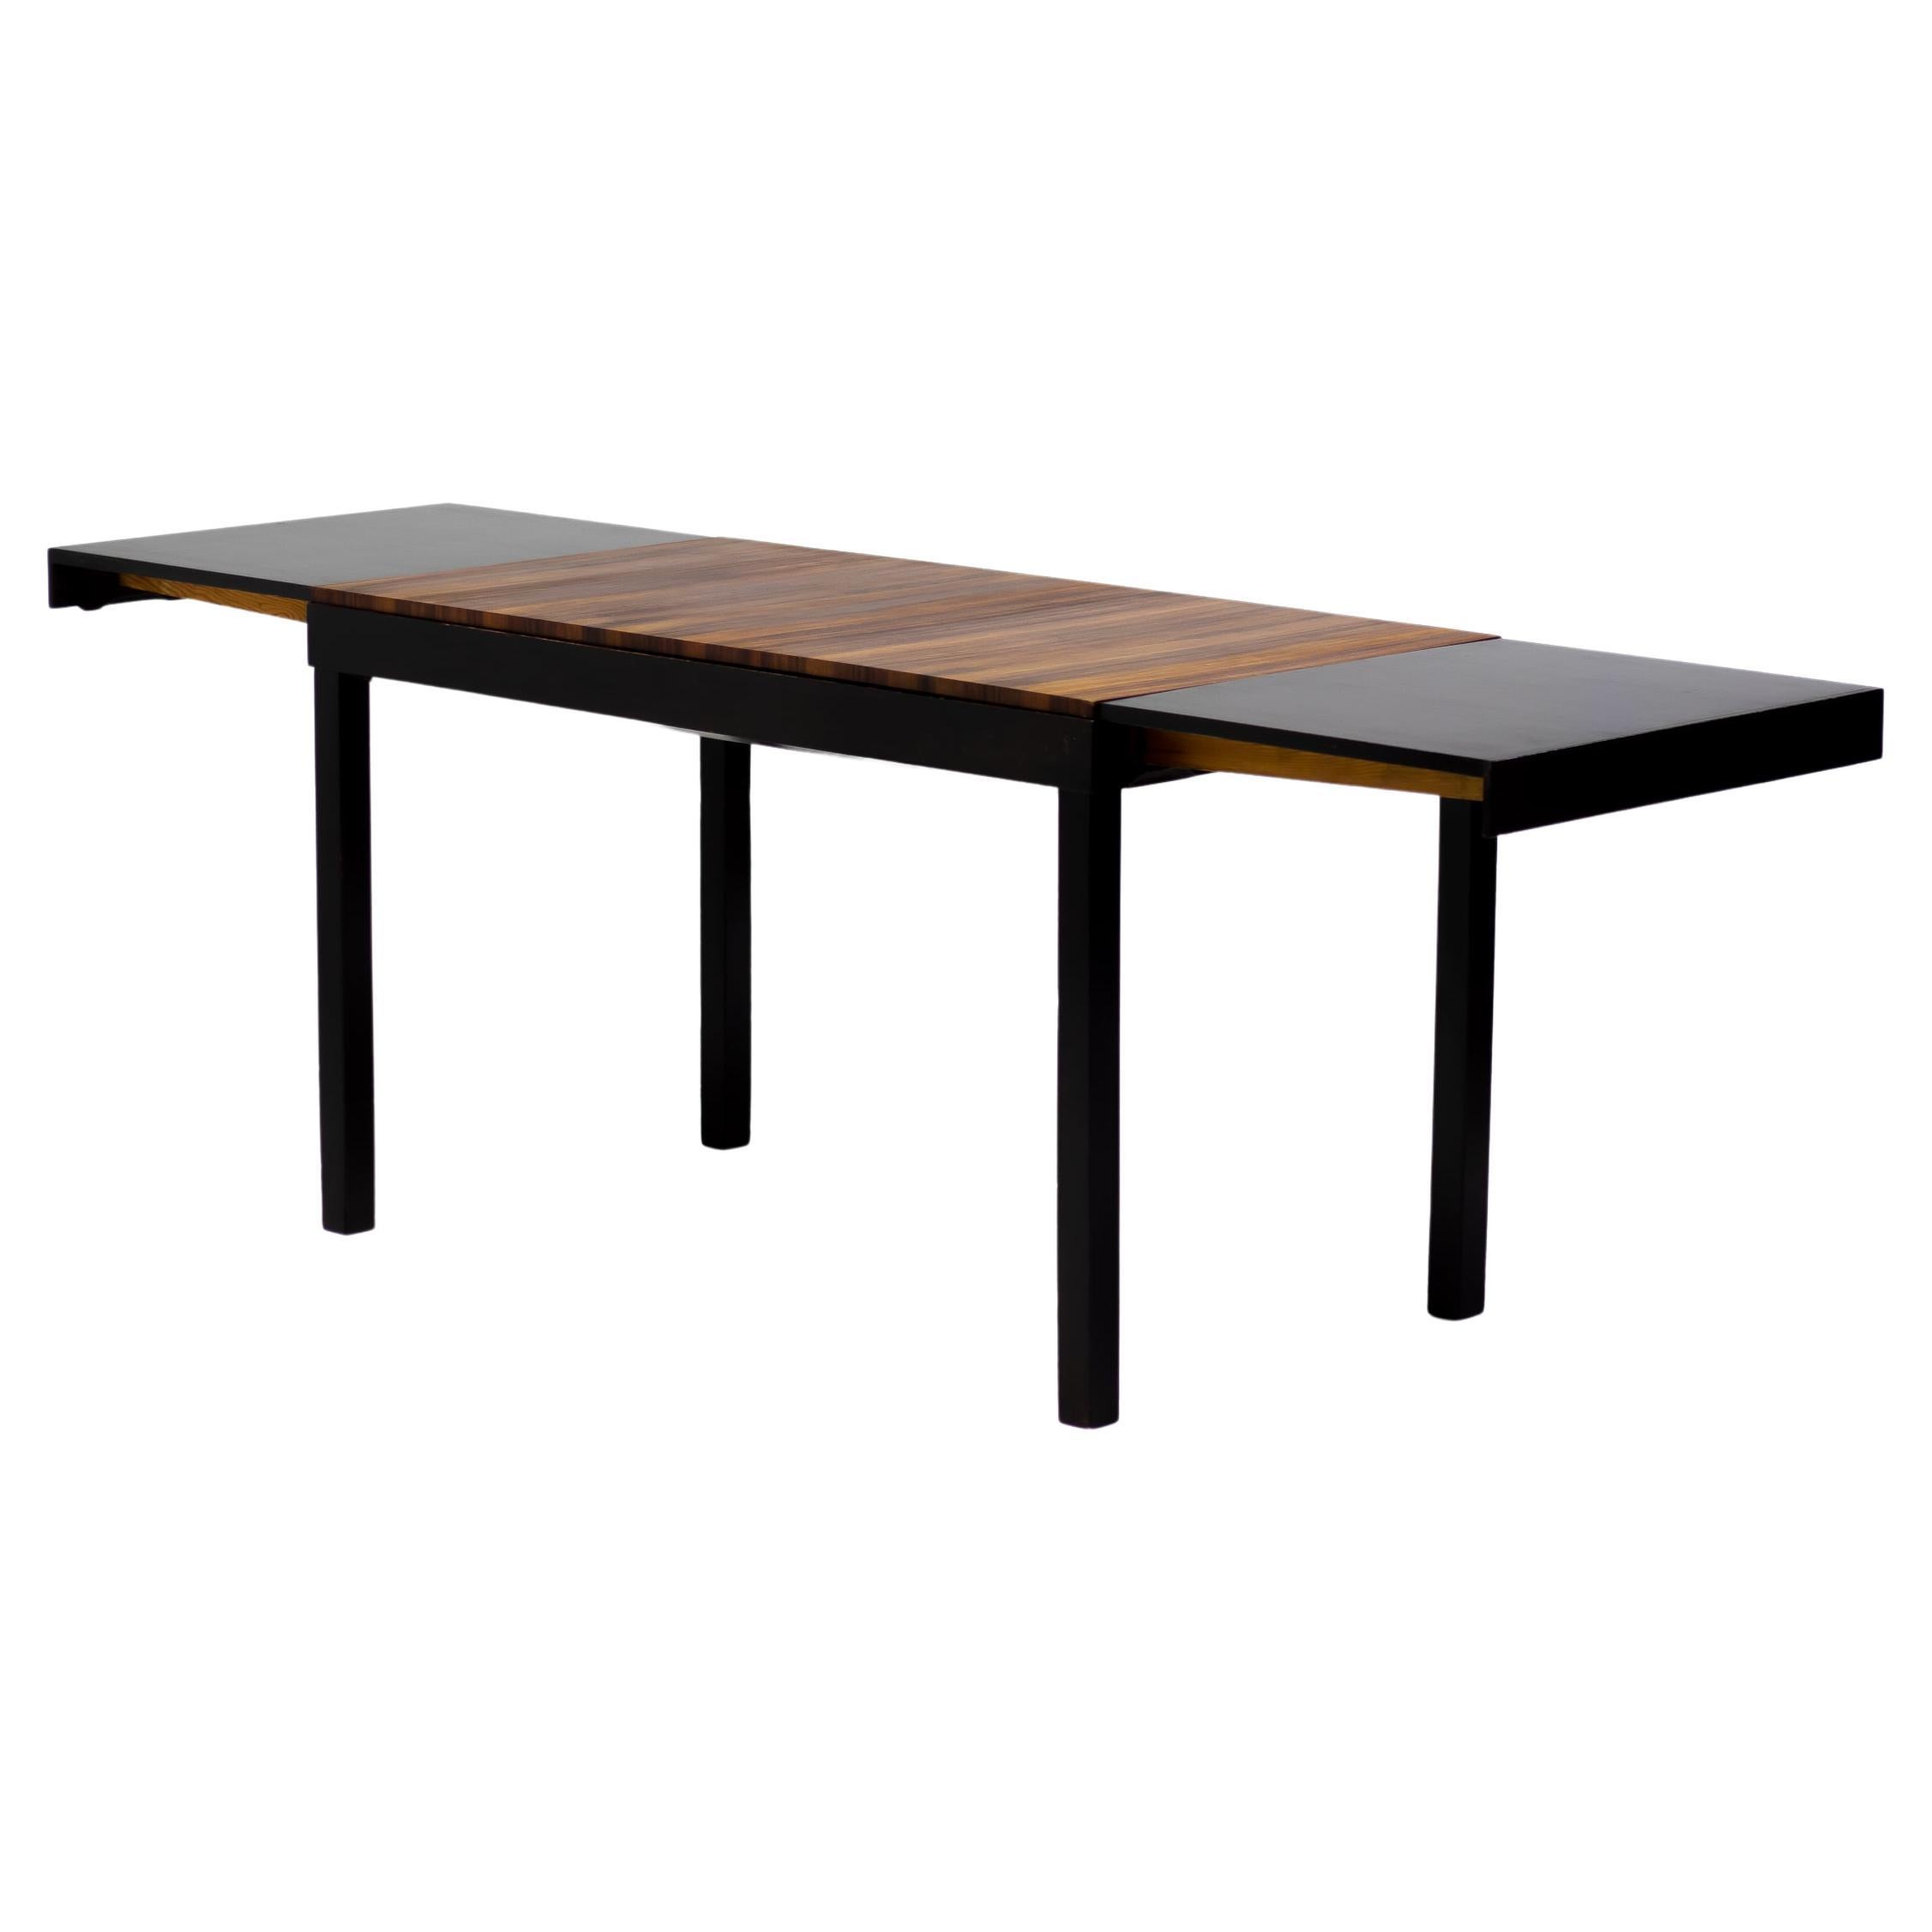 Axel Einar Hjorth Extendable Table